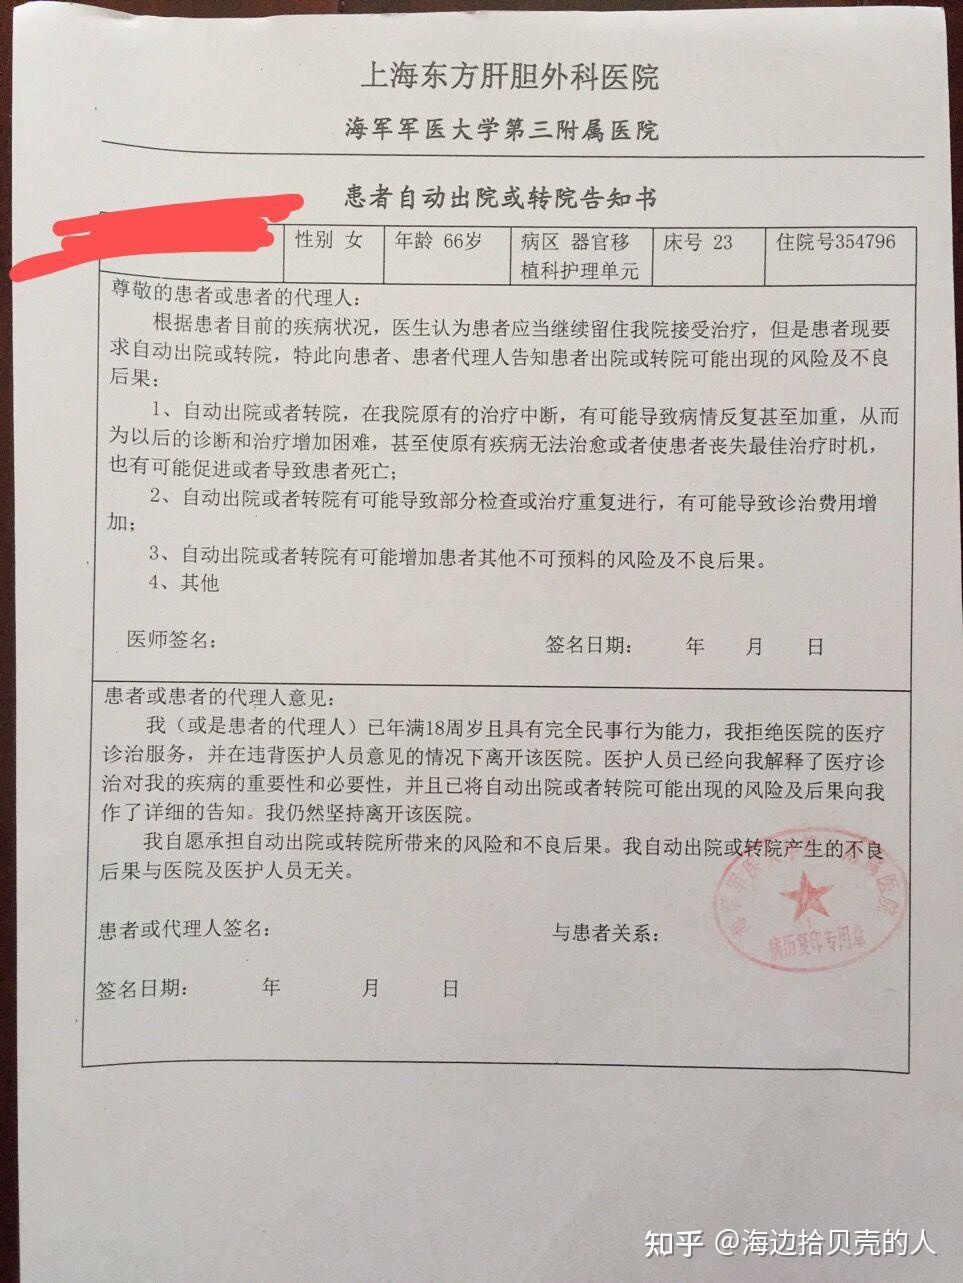 去上海东方肝胆外科医院复印病历需要准备哪些资料? 